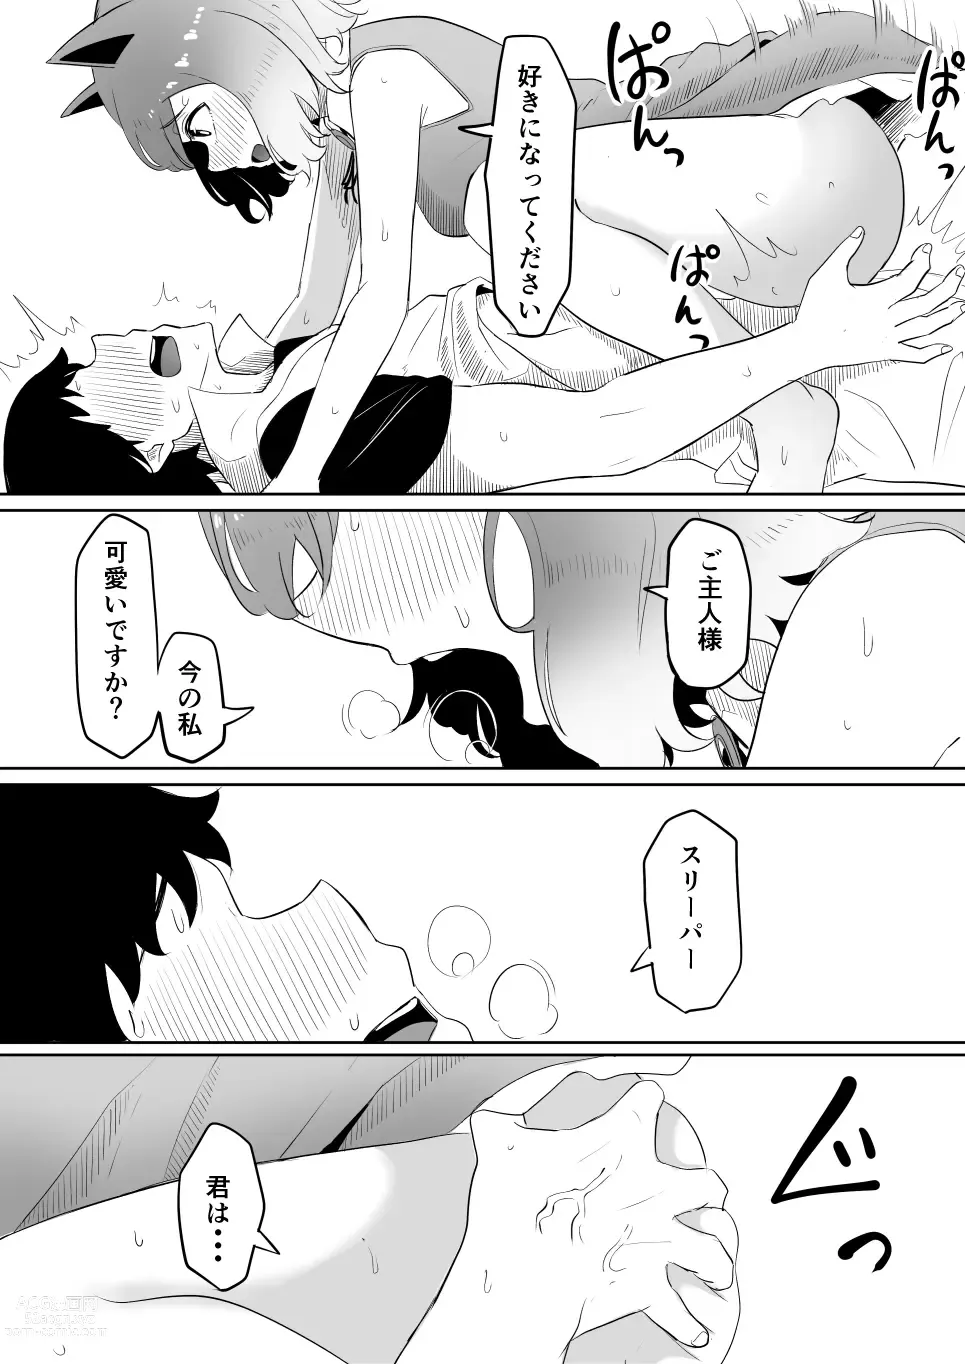 Page 24 of doujinshi Koi o Shita Sleeper-chan.